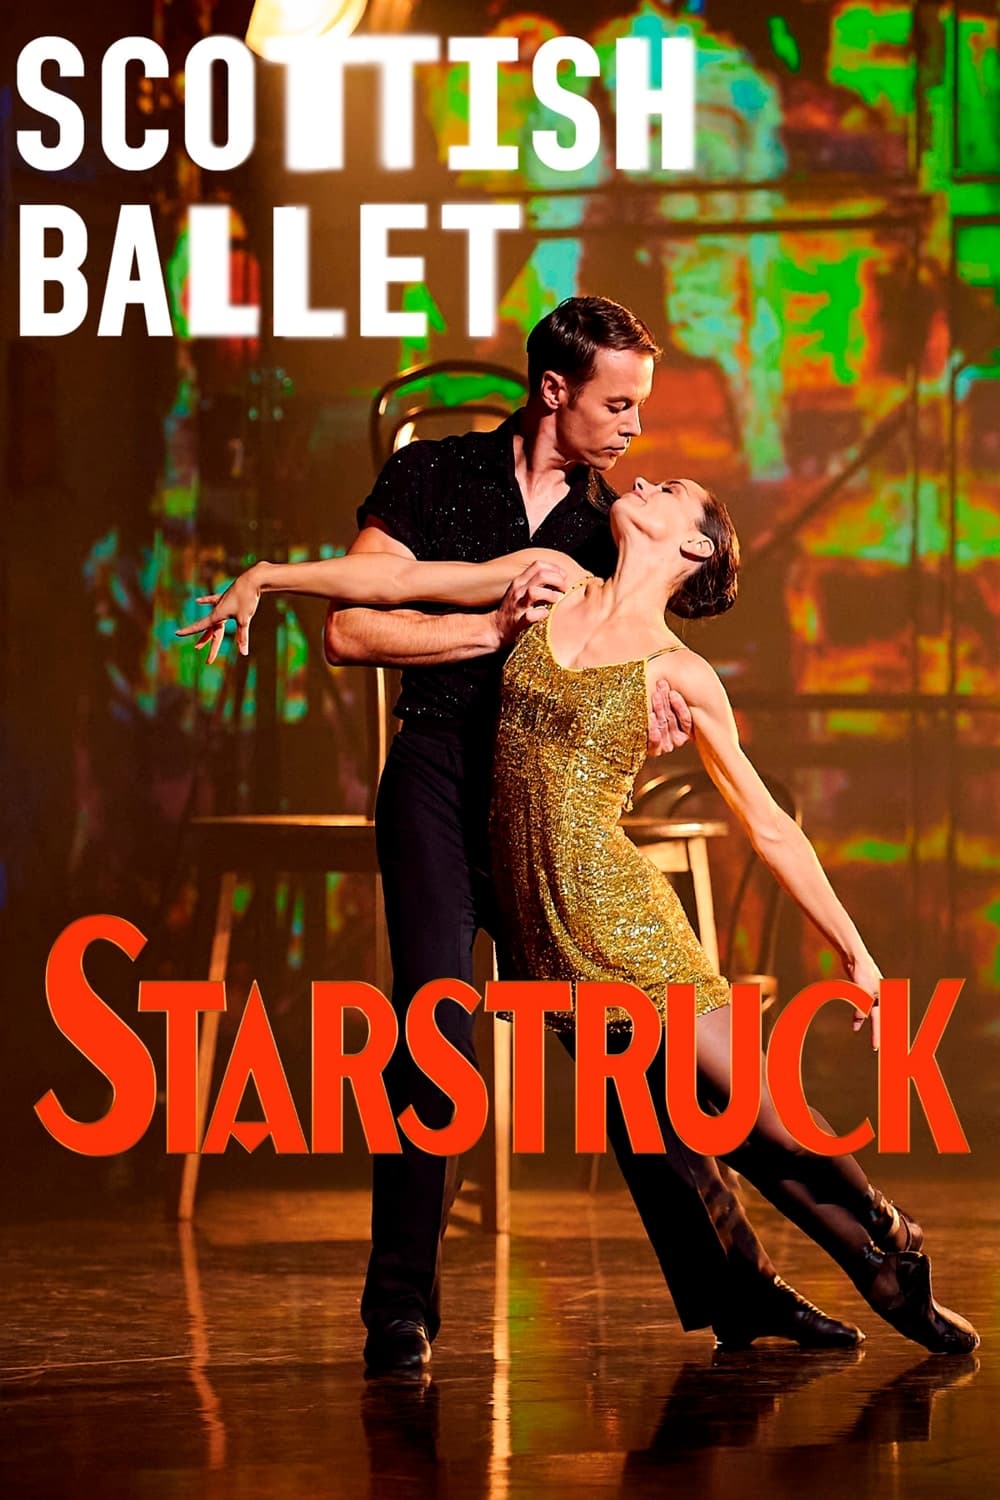 Starstruck: Gene Kelly's Love Letter to Ballet